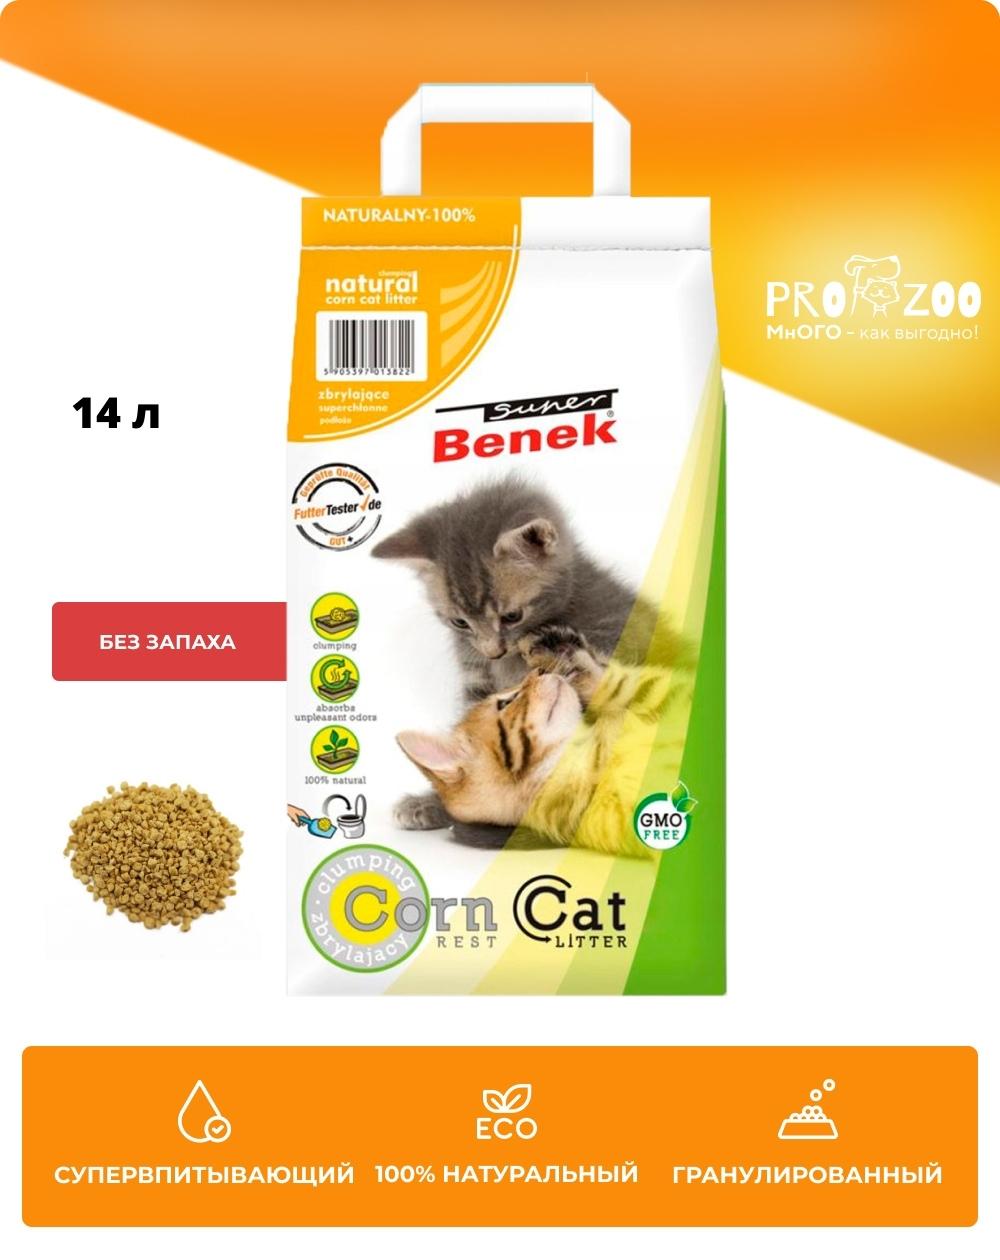 Наполнитель Corn Cat для кошек, 8,8 кг 1